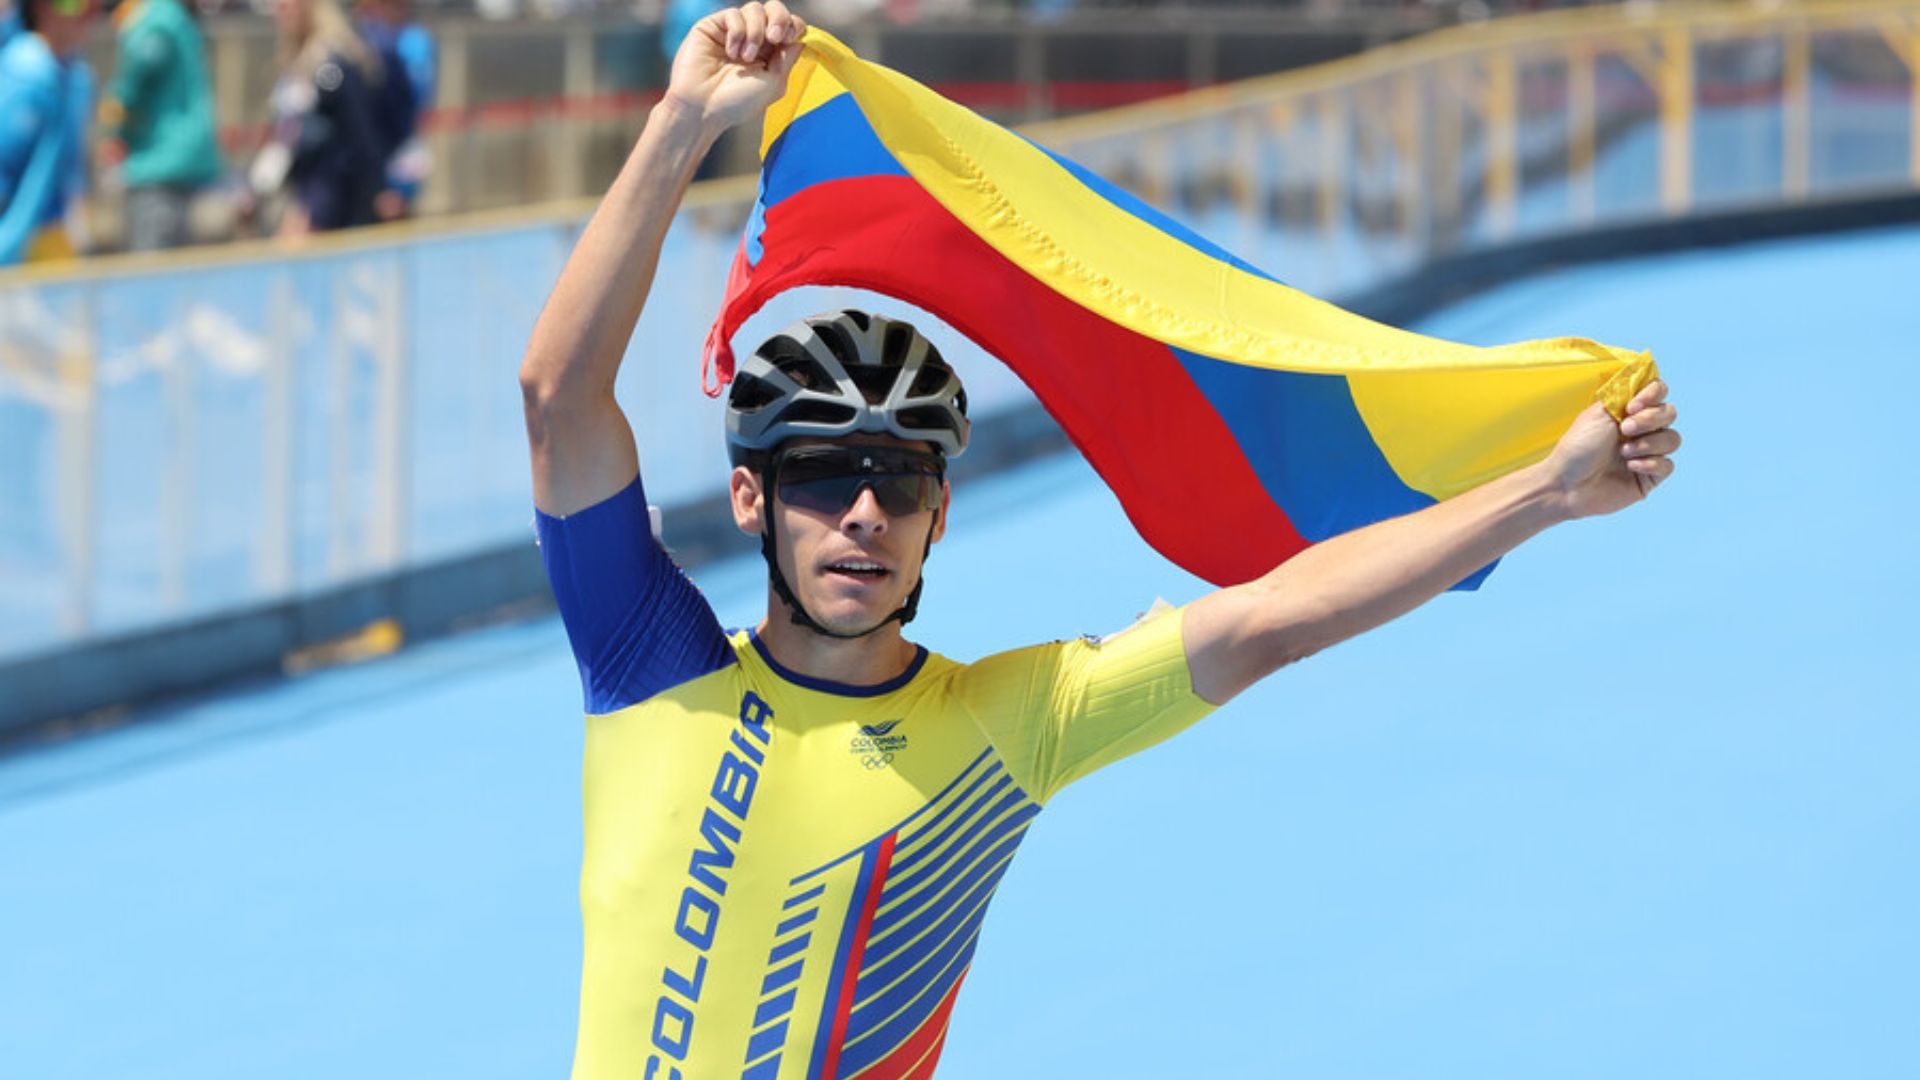 Patinaje de velocidad: Colombia se quedó con el oro en 500 metros masculino